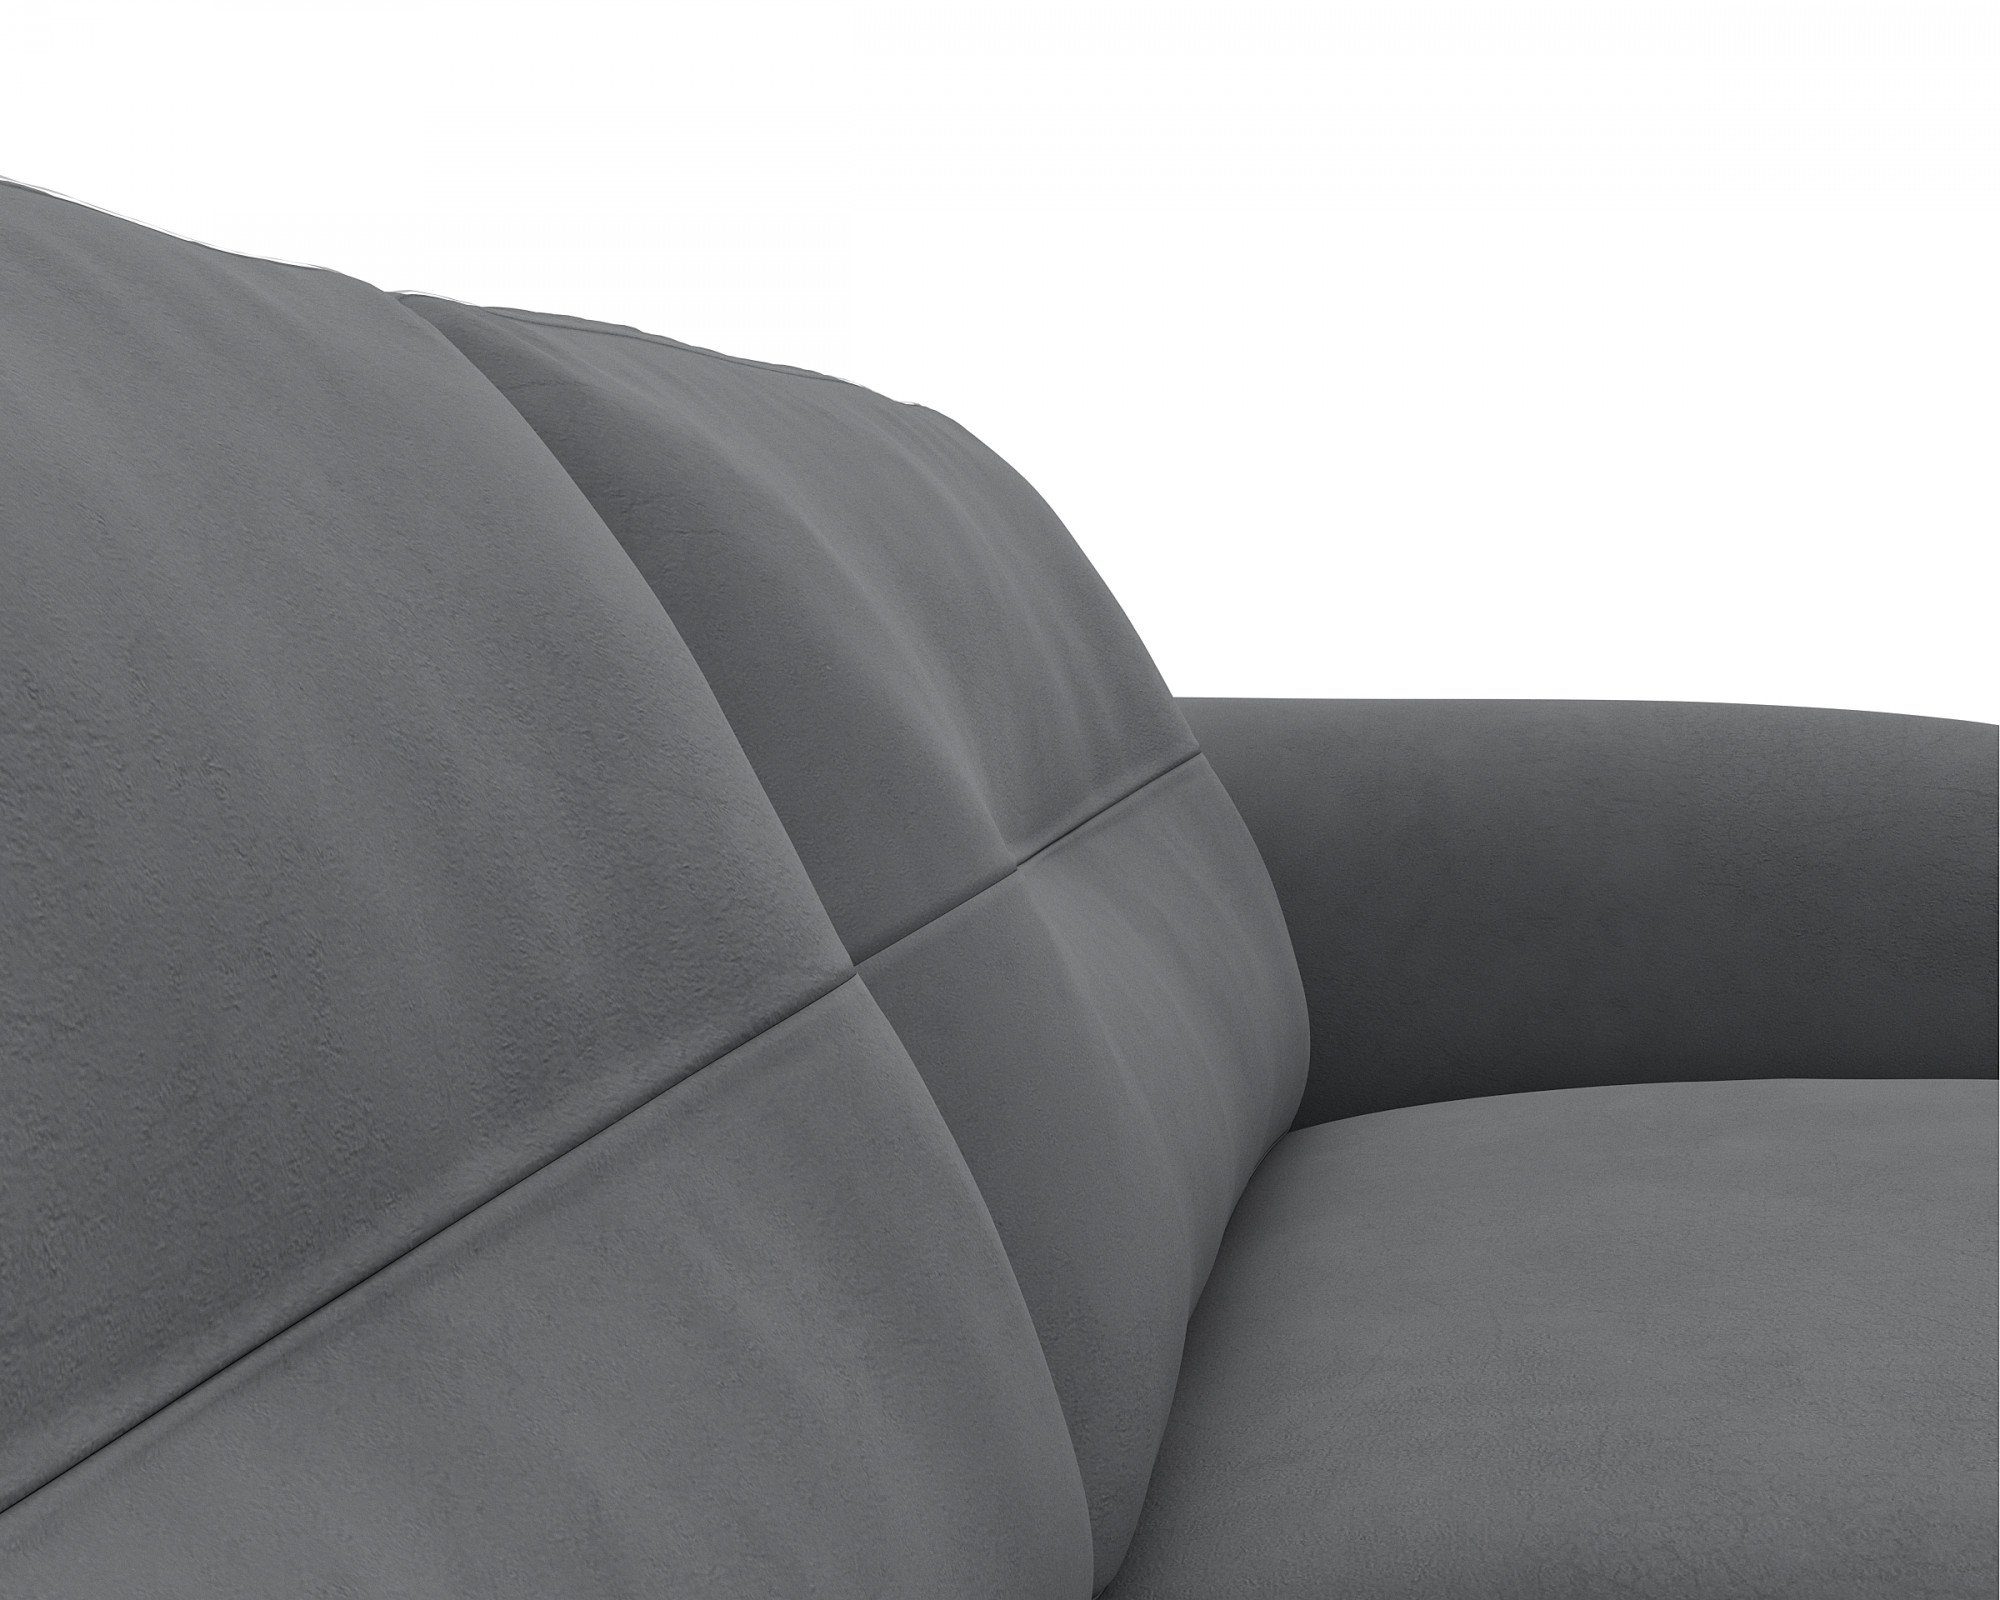 FLEXLUX 2,5-Sitzer Glow, Theca Furniture UAB